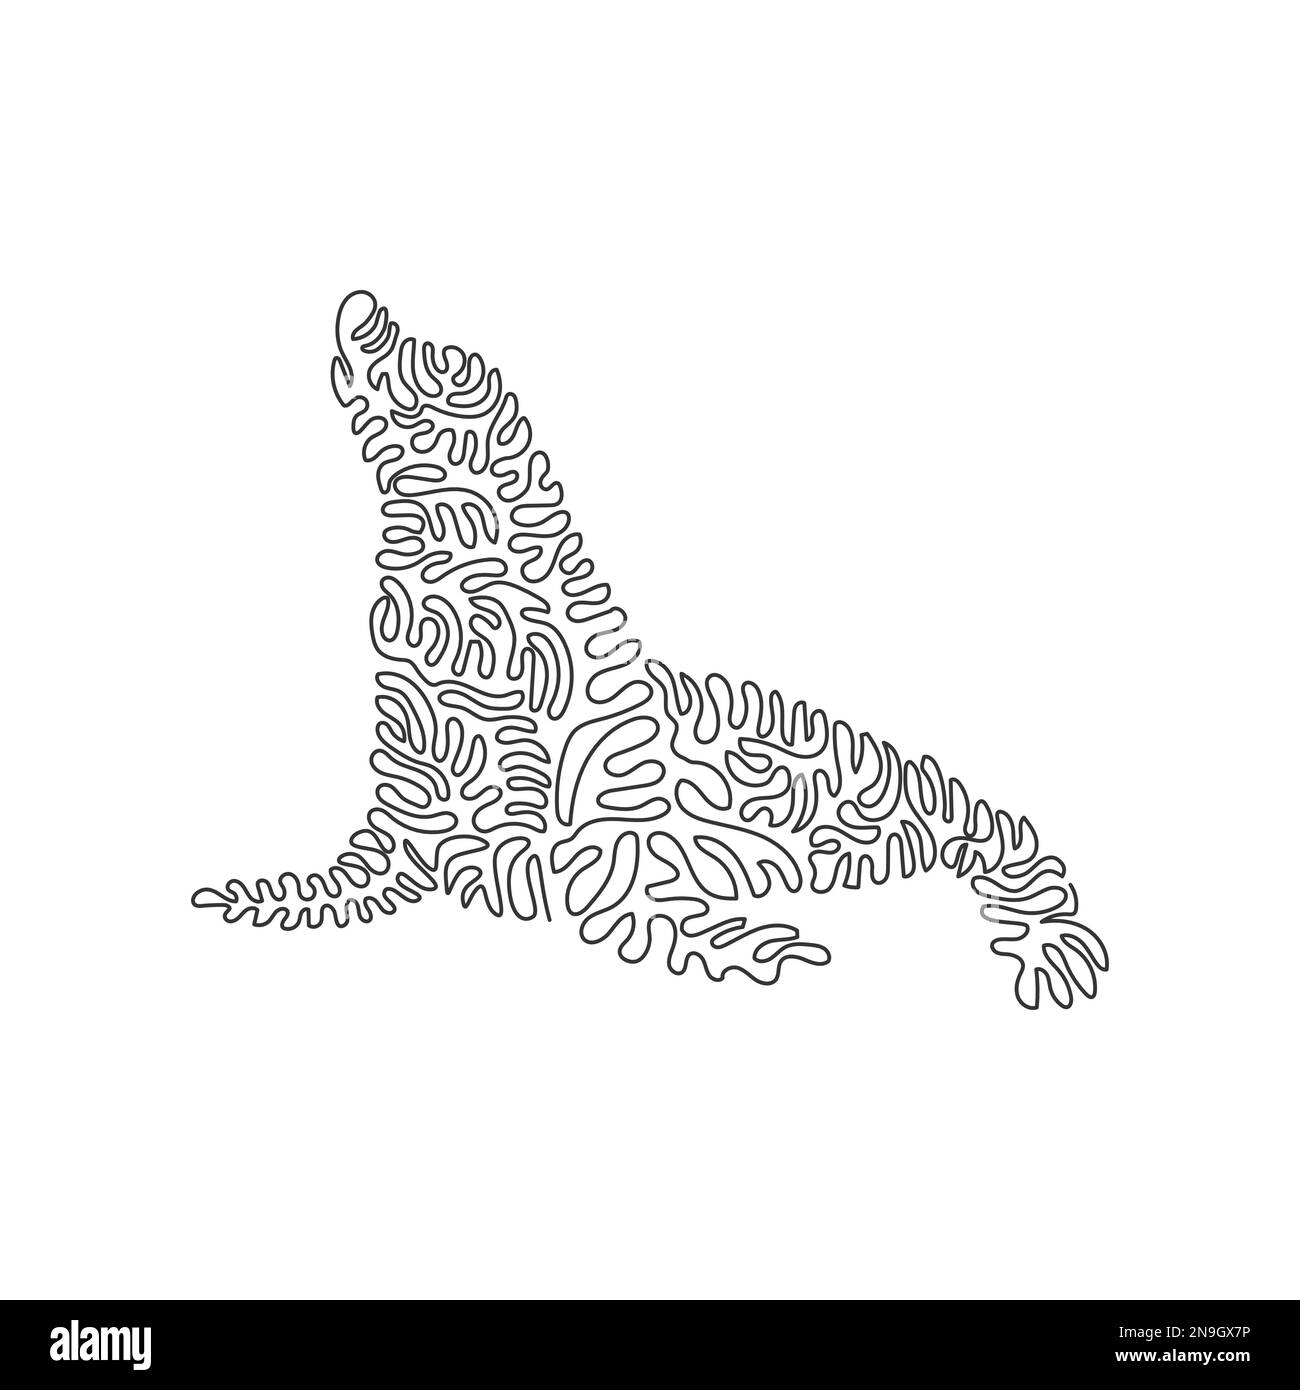 Durchgehende Kurve eine Linienzeichnung eines süßen sitzenden Seelöwen. Einzeilige editierbare Strichvektordarstellung langer Flossen Seelöwen Stock Vektor